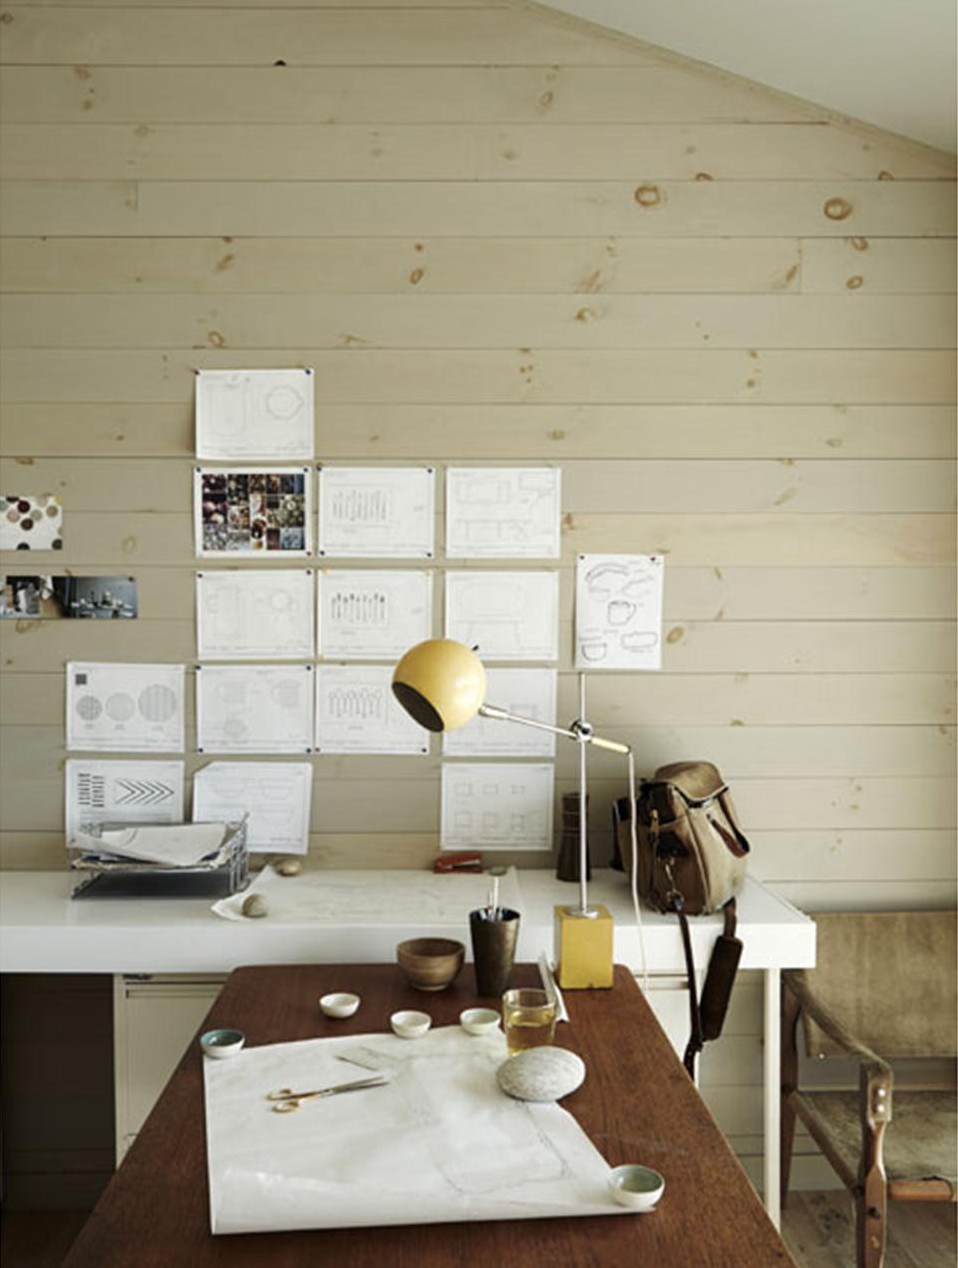 Домашний офис пары дизайнеров. Эскизы можно вешать прямо на деревянную стену. Внимание привлекает желтая настольная лампа в стиле середины 20-го века